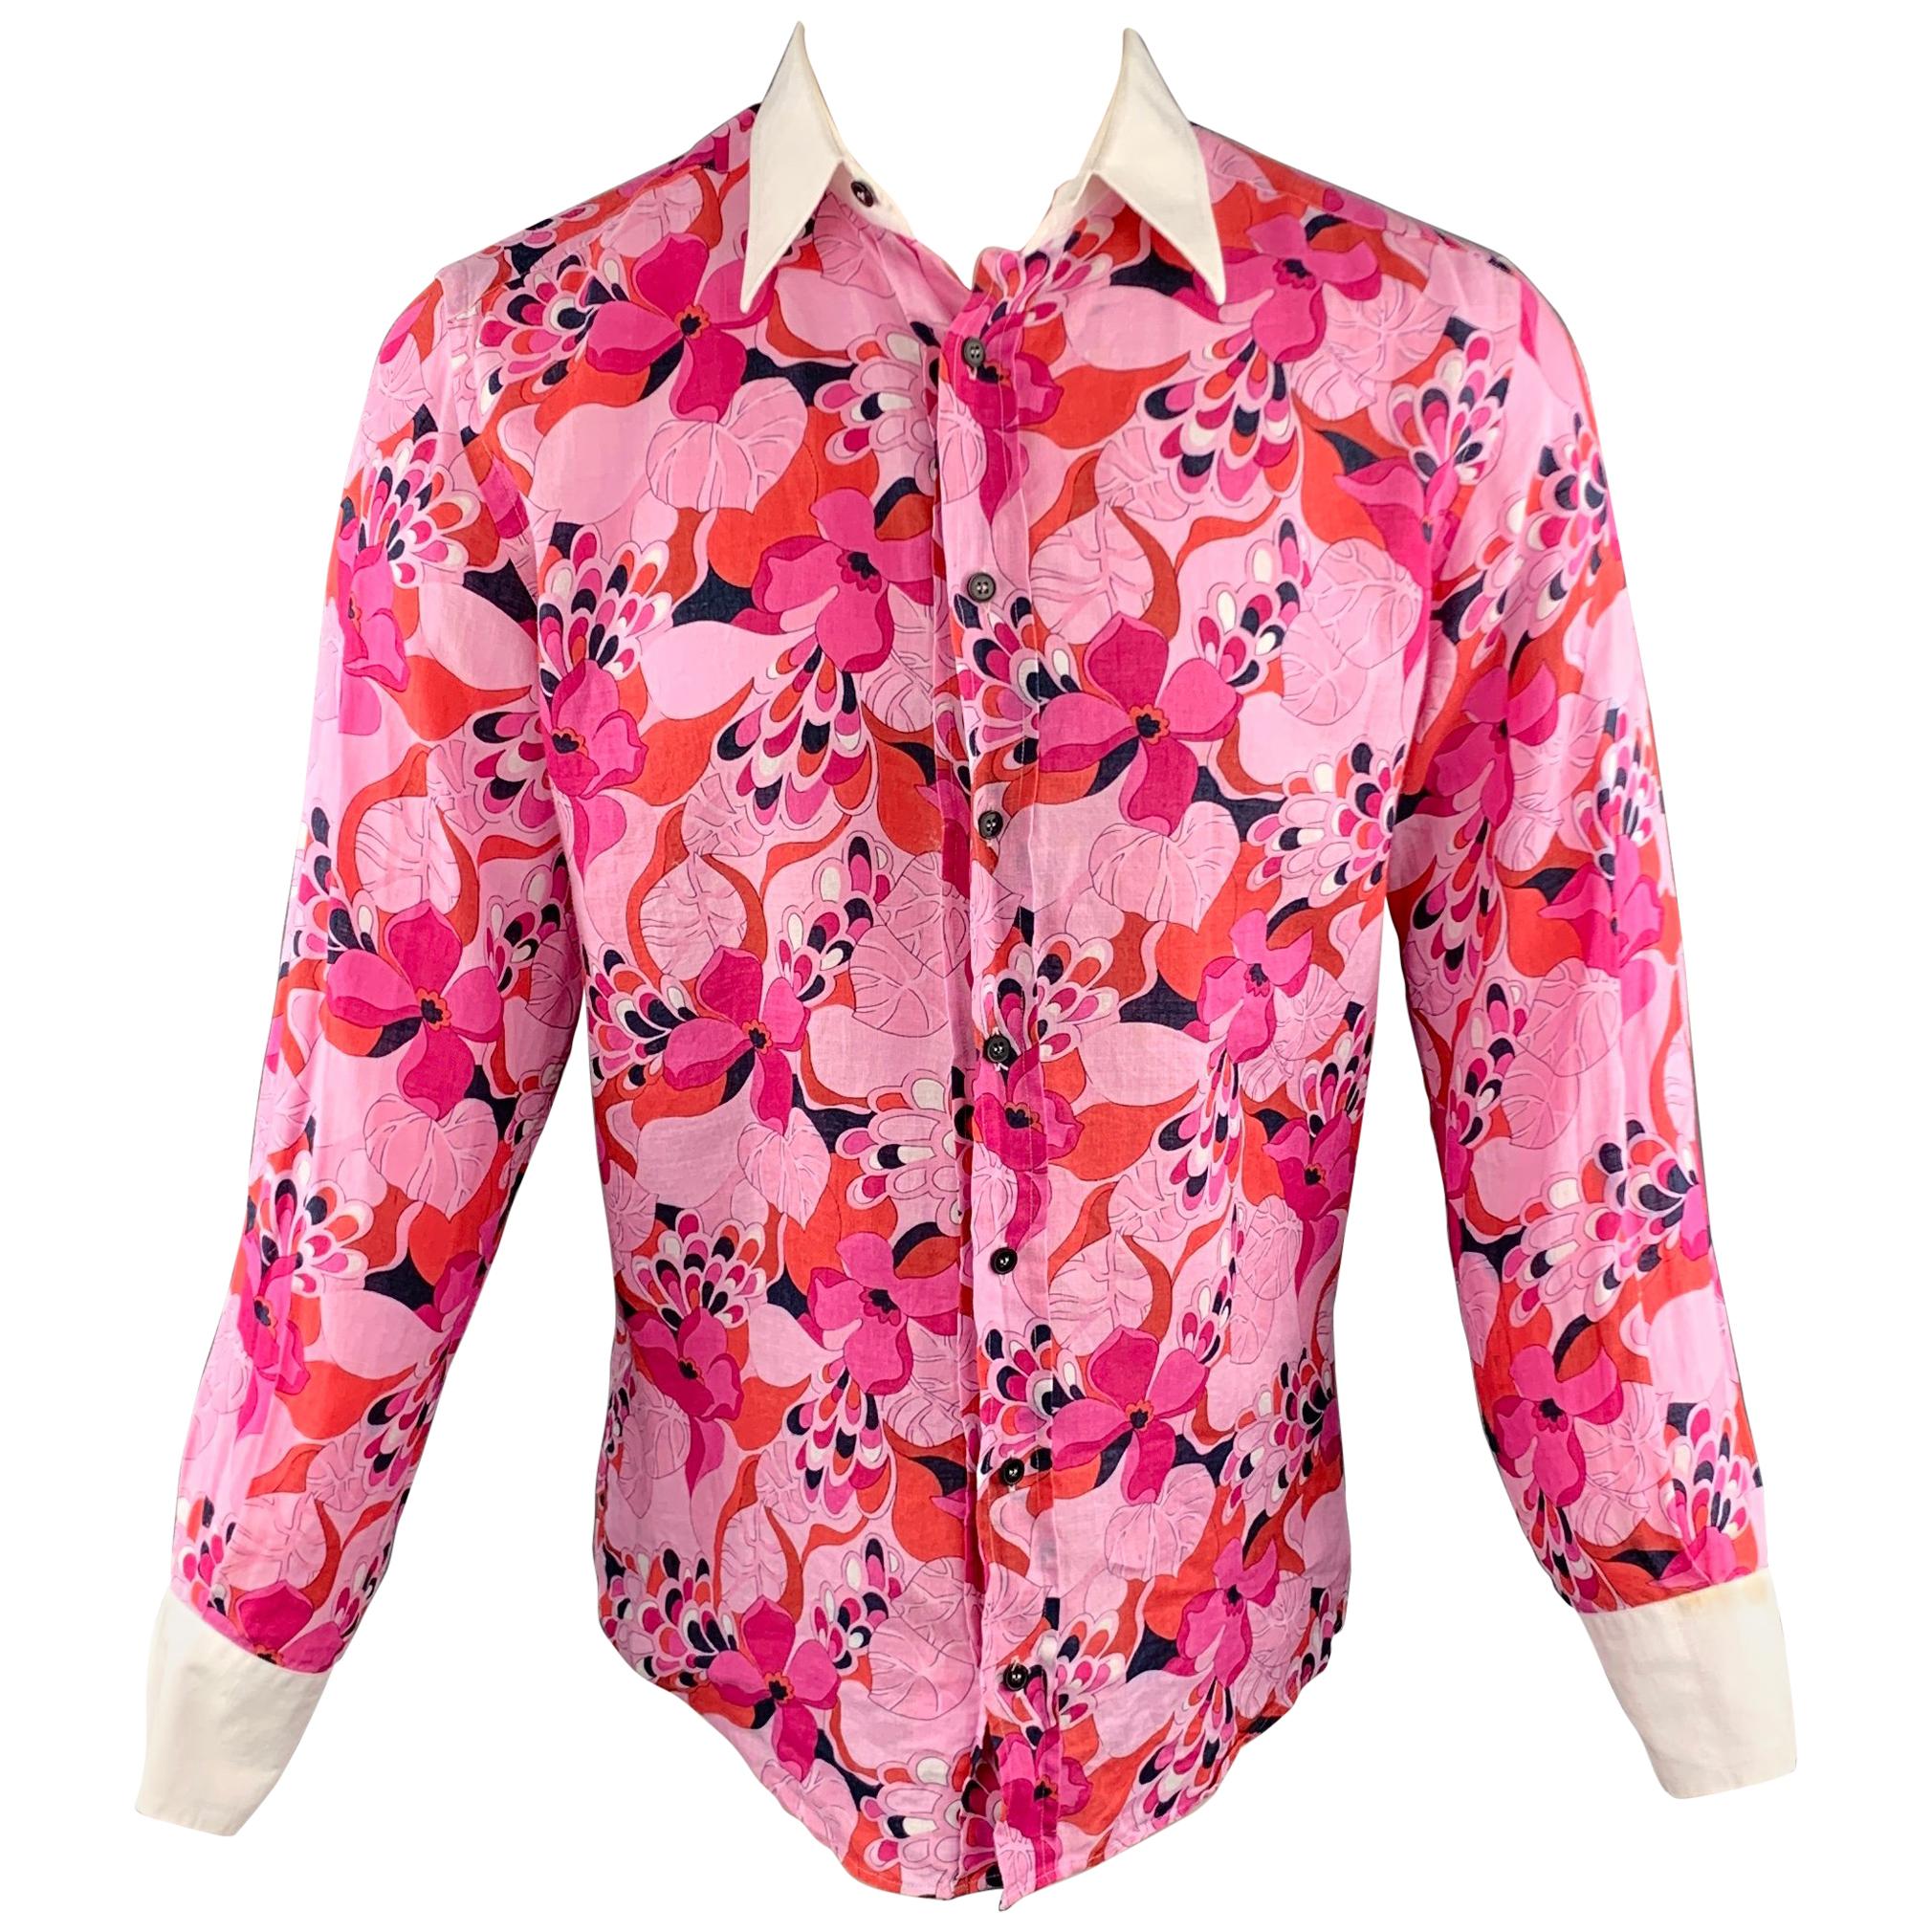 Men's DOLCE & GABBANA Size M Pink Floral Linen Button Up Long Sleeve Shirt